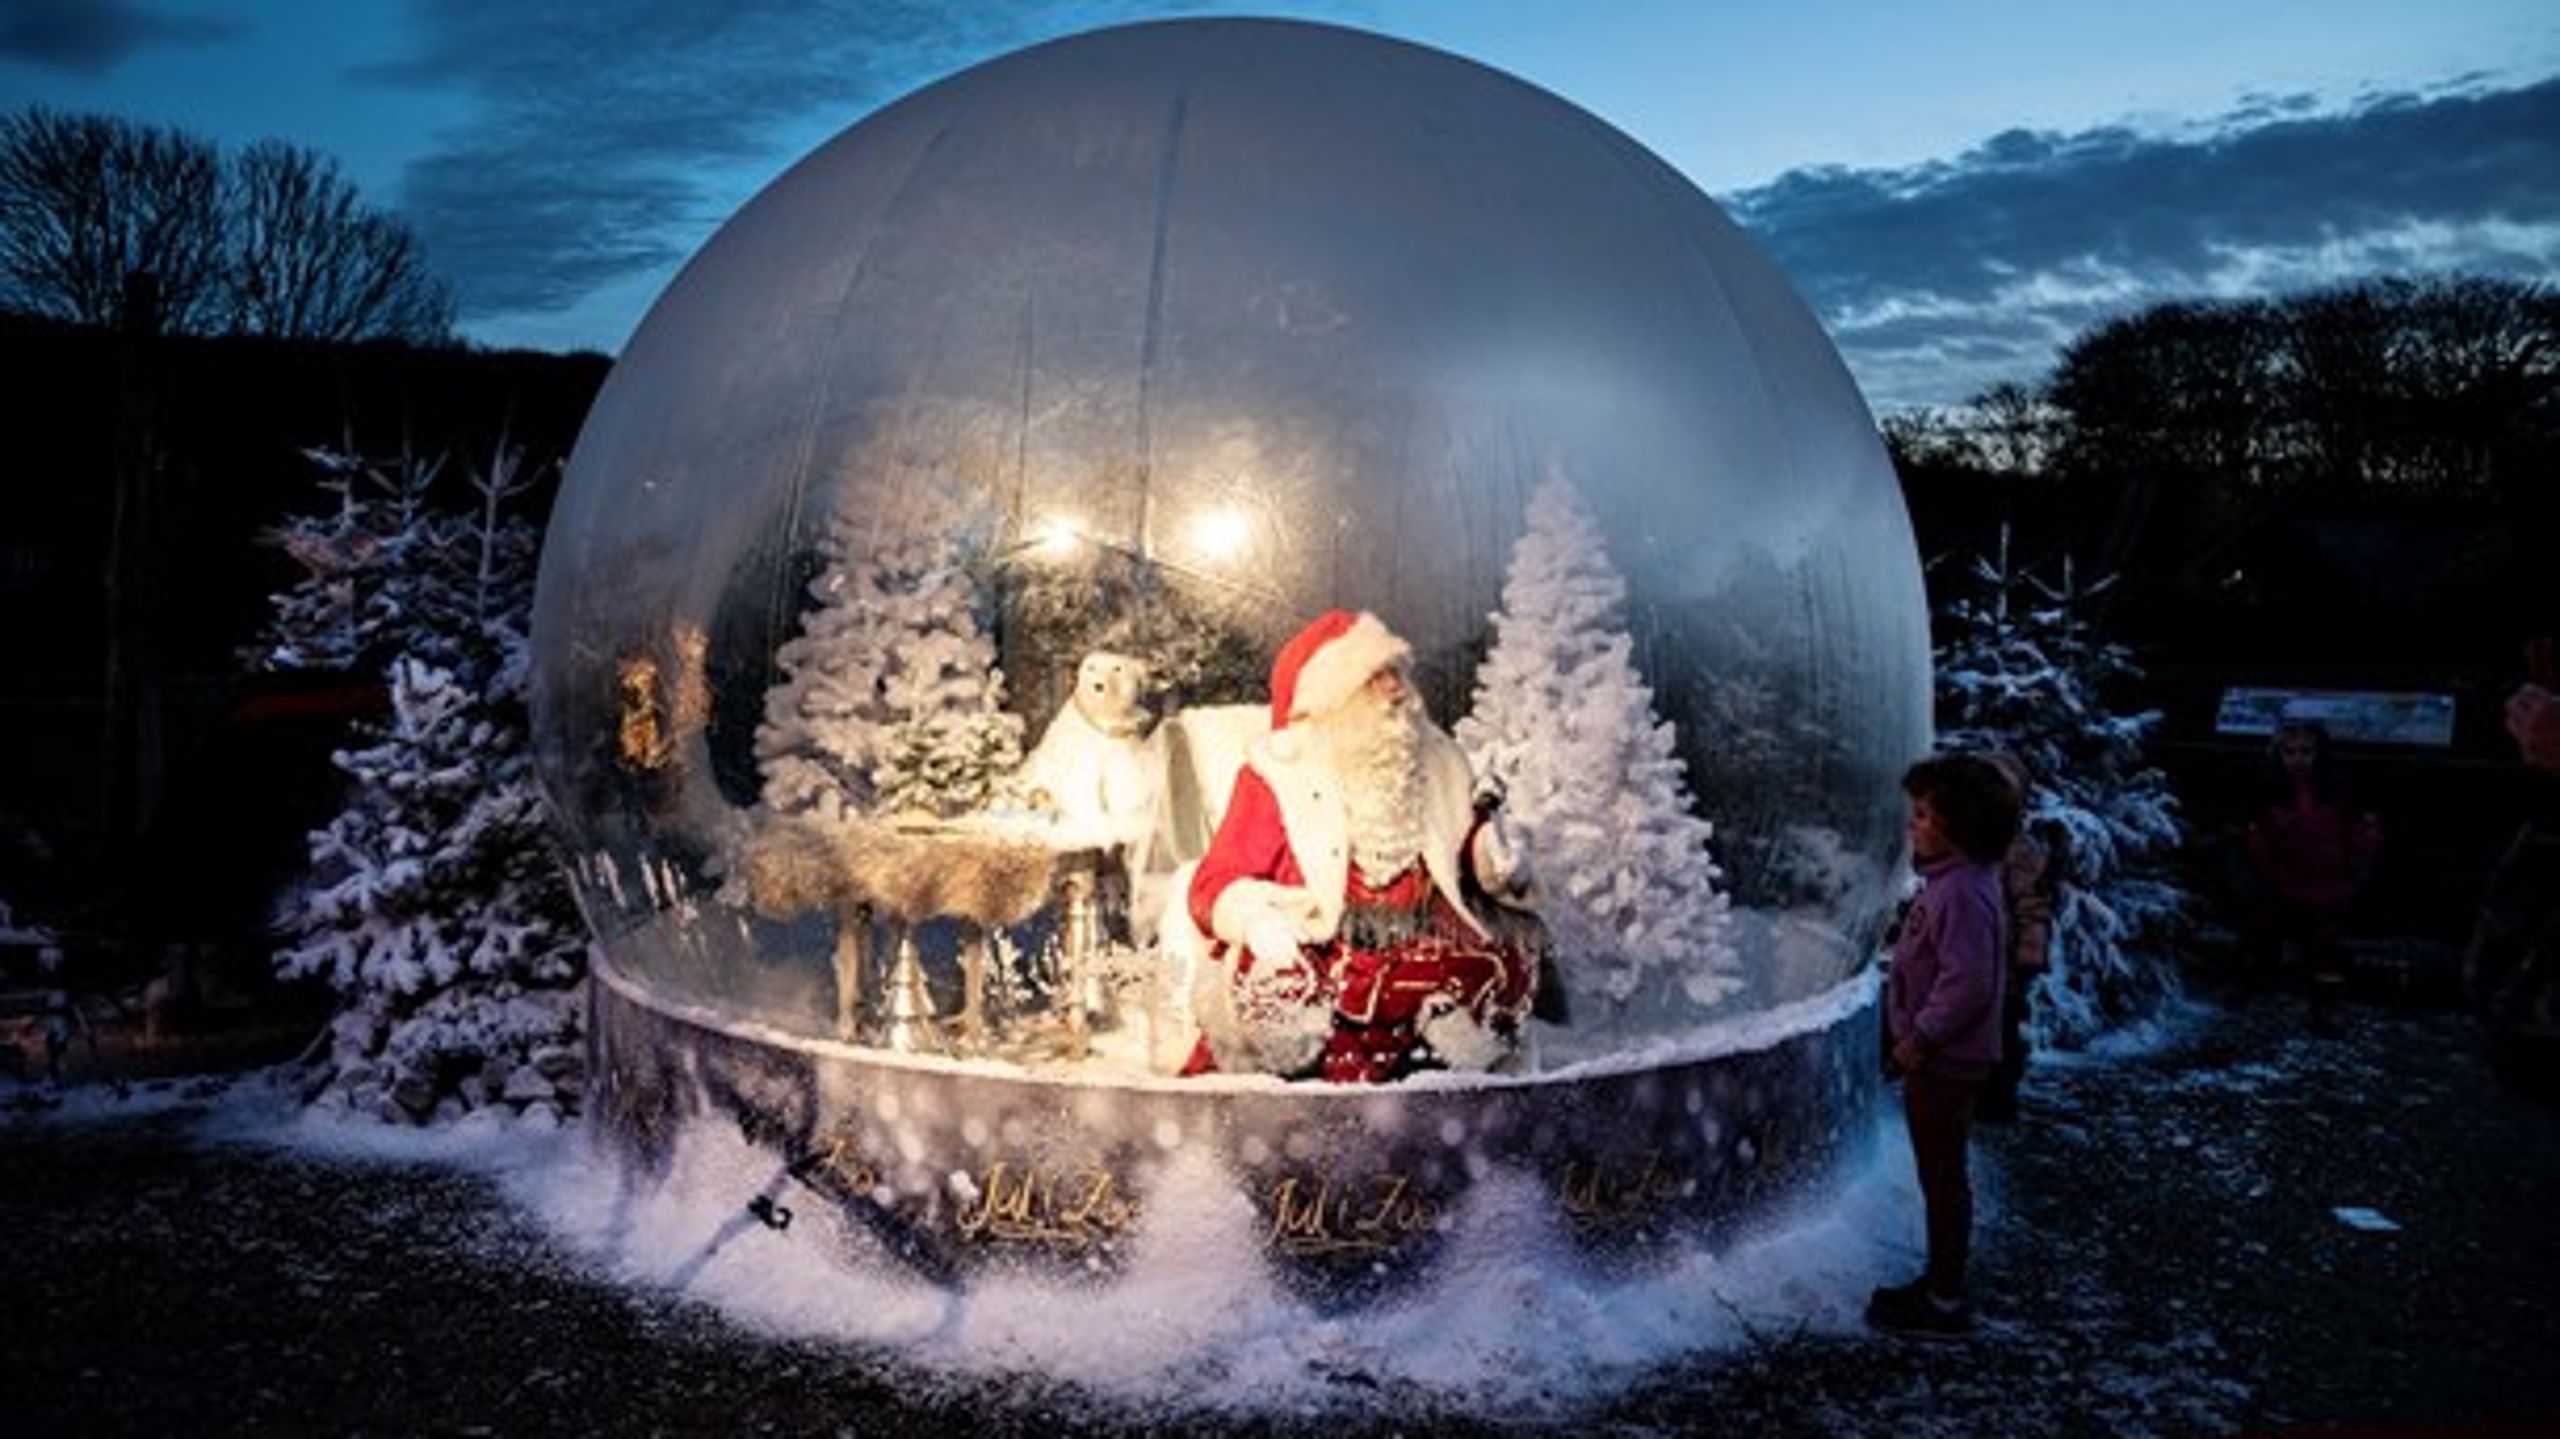 40 procent af danskerne er klar til at ændre deres adfærd under julen på grund af corona.